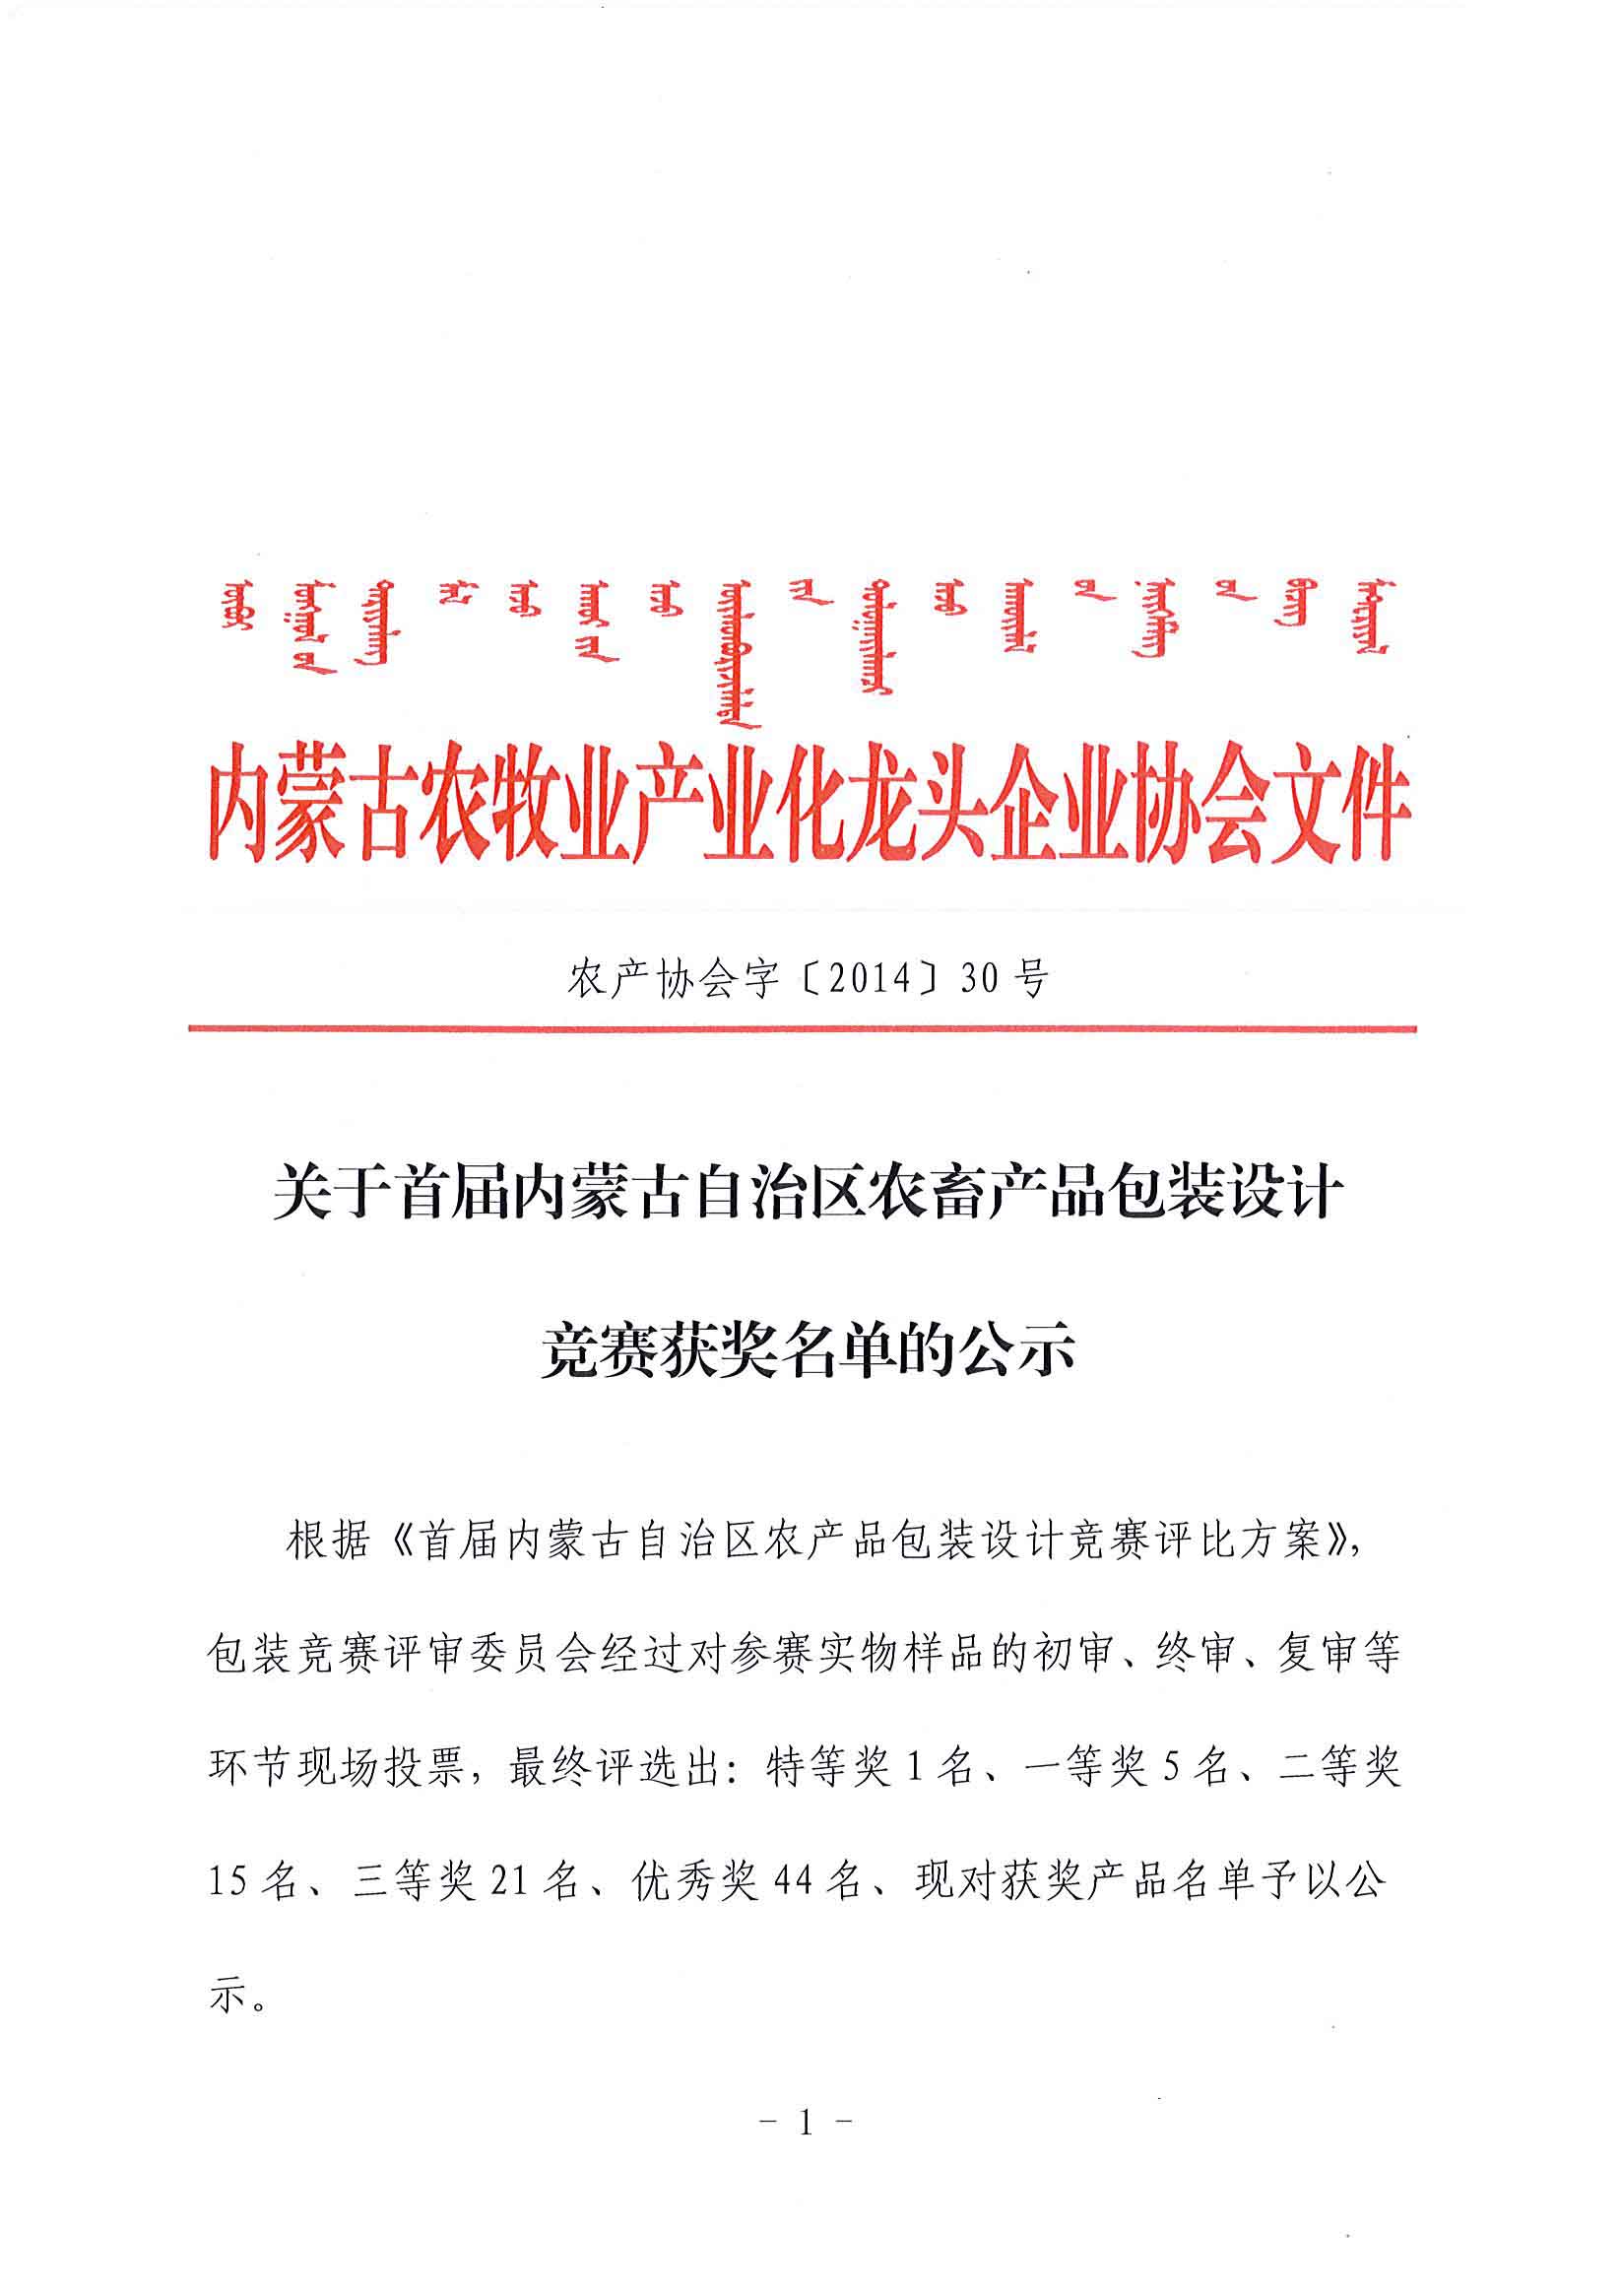 关于首届米乐M6(中国)官方网站自治区农畜产品包装设计竞赛获奖名单的公示